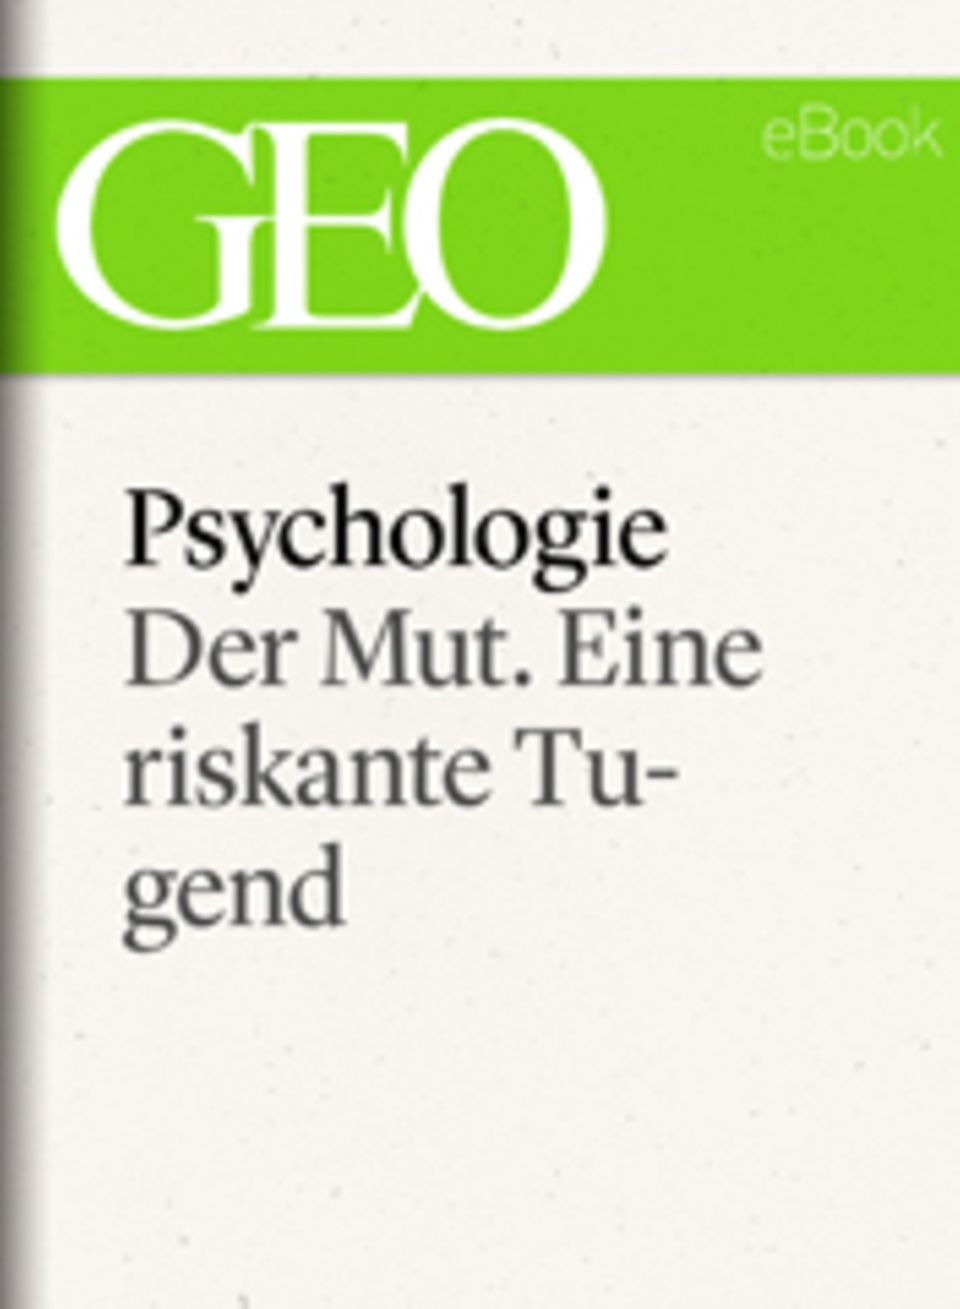 Der Mut. Eine riskante Tugend: GEO eBook "Psychologie"